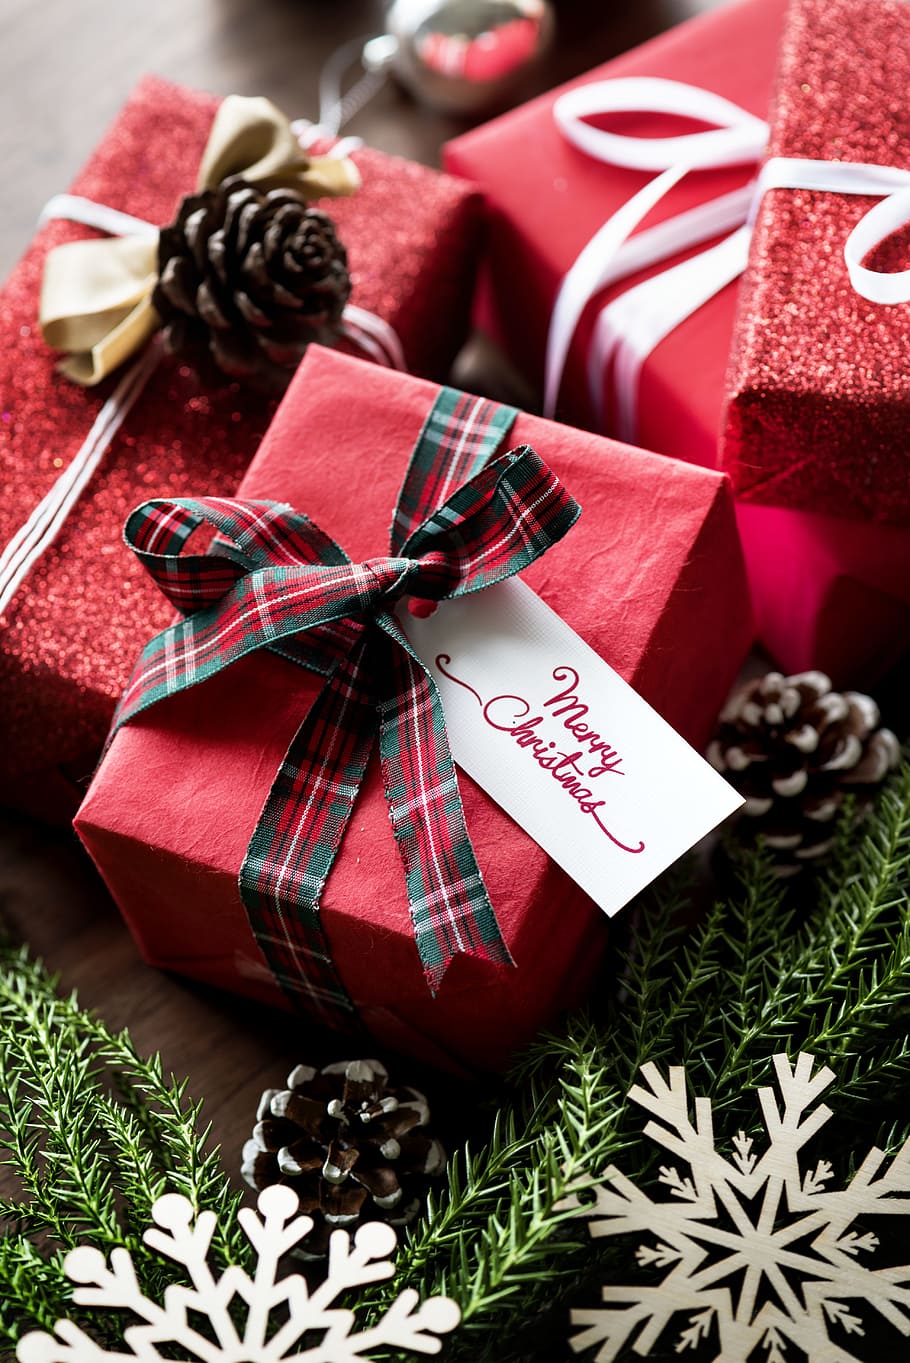 caixa, cartão, comemorar, celebração, natal, decorar, decoração, festival, festivo, presente